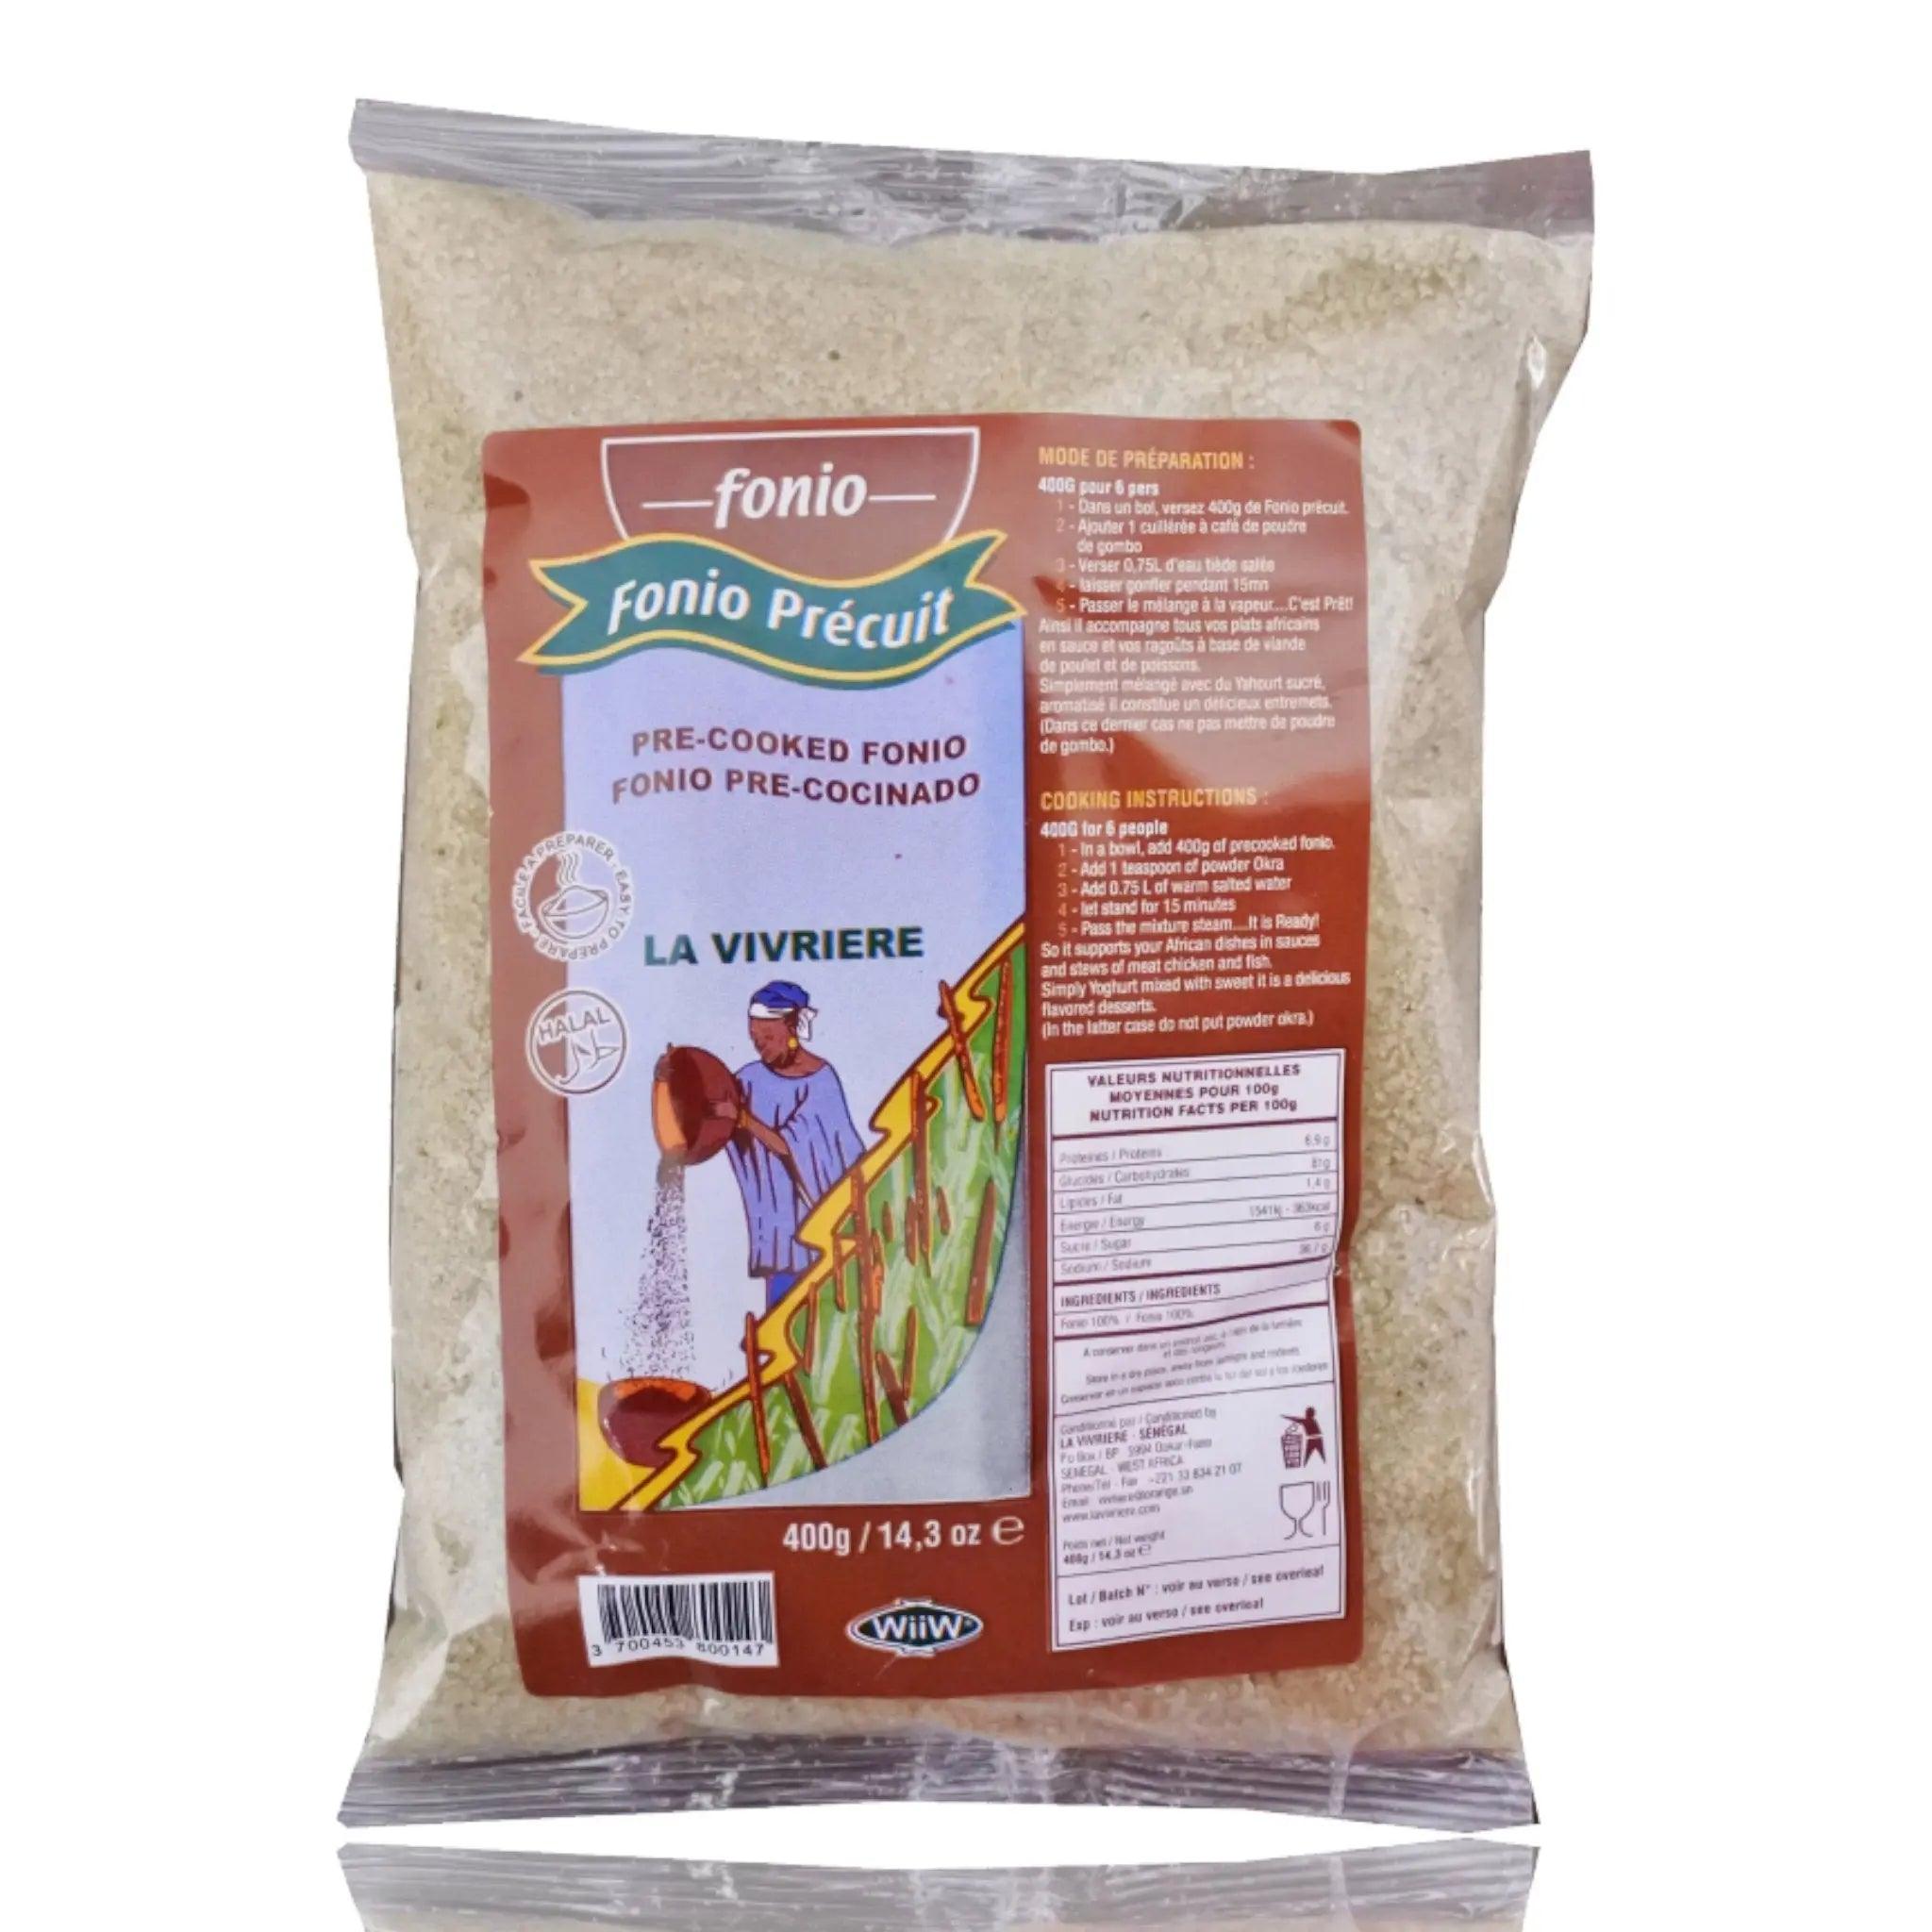 La Vivriere Fonio Precuit Flour - Honesty Sales U.K